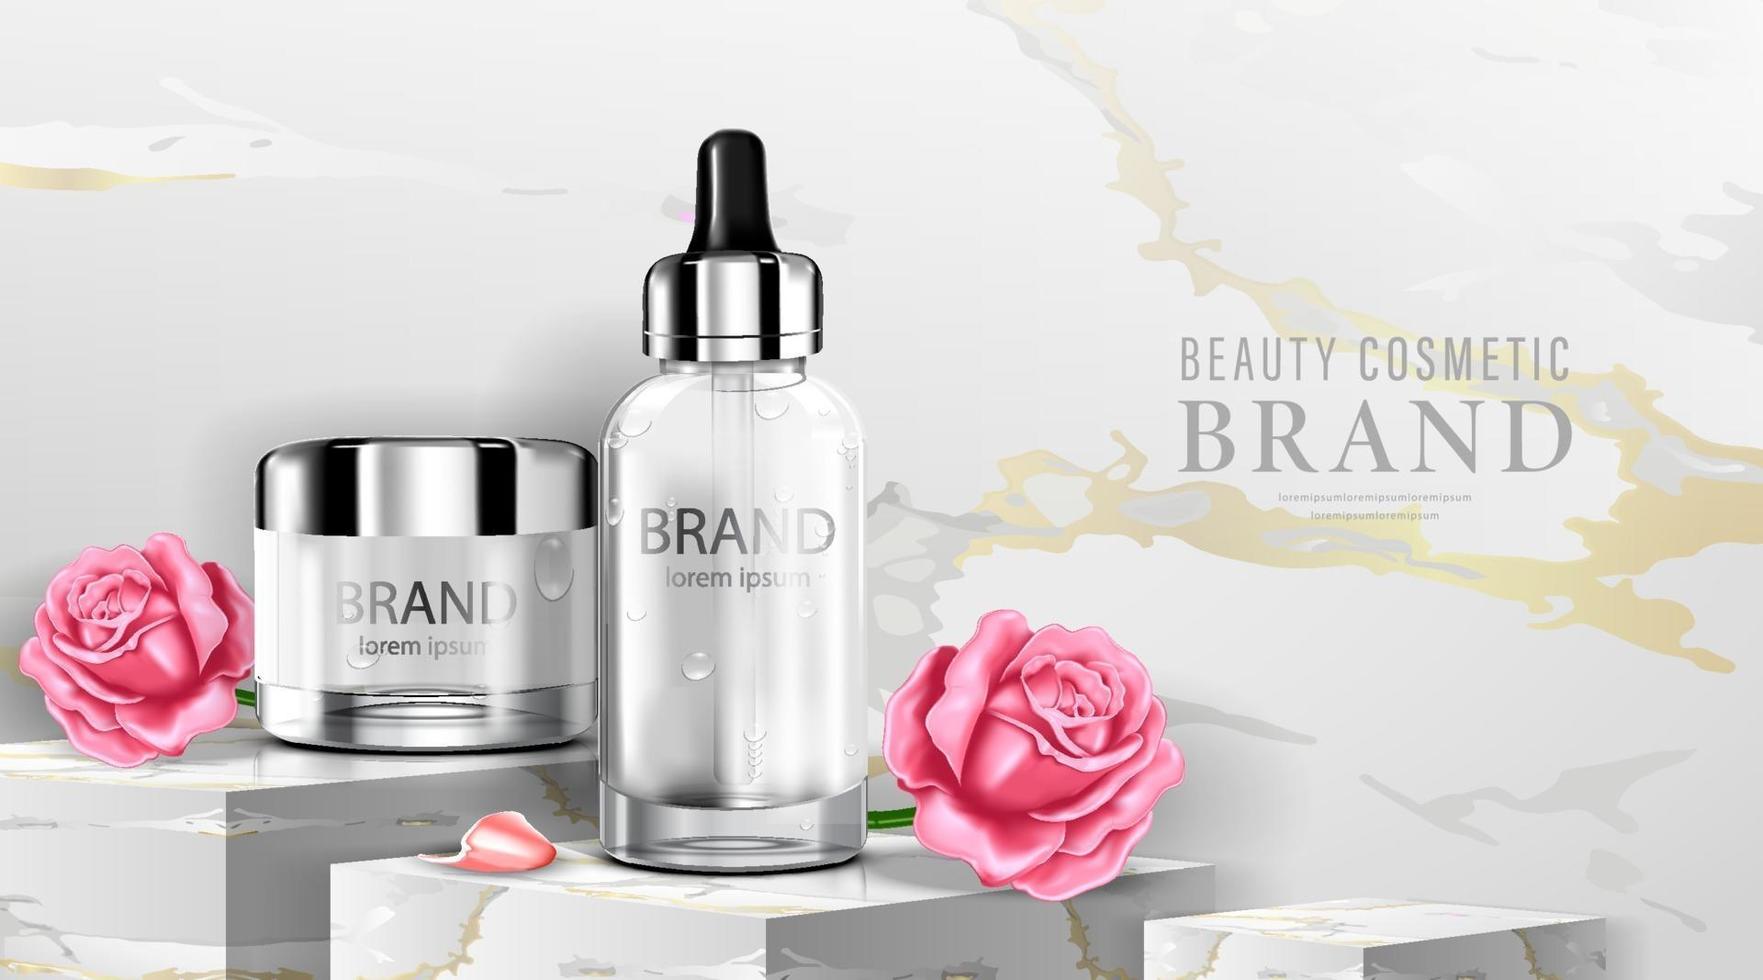 paquete de botella cosmética de lujo crema para el cuidado de la piel, cartel cosmético de belleza, producto y fondo de mármol, ilustración vectorial vector